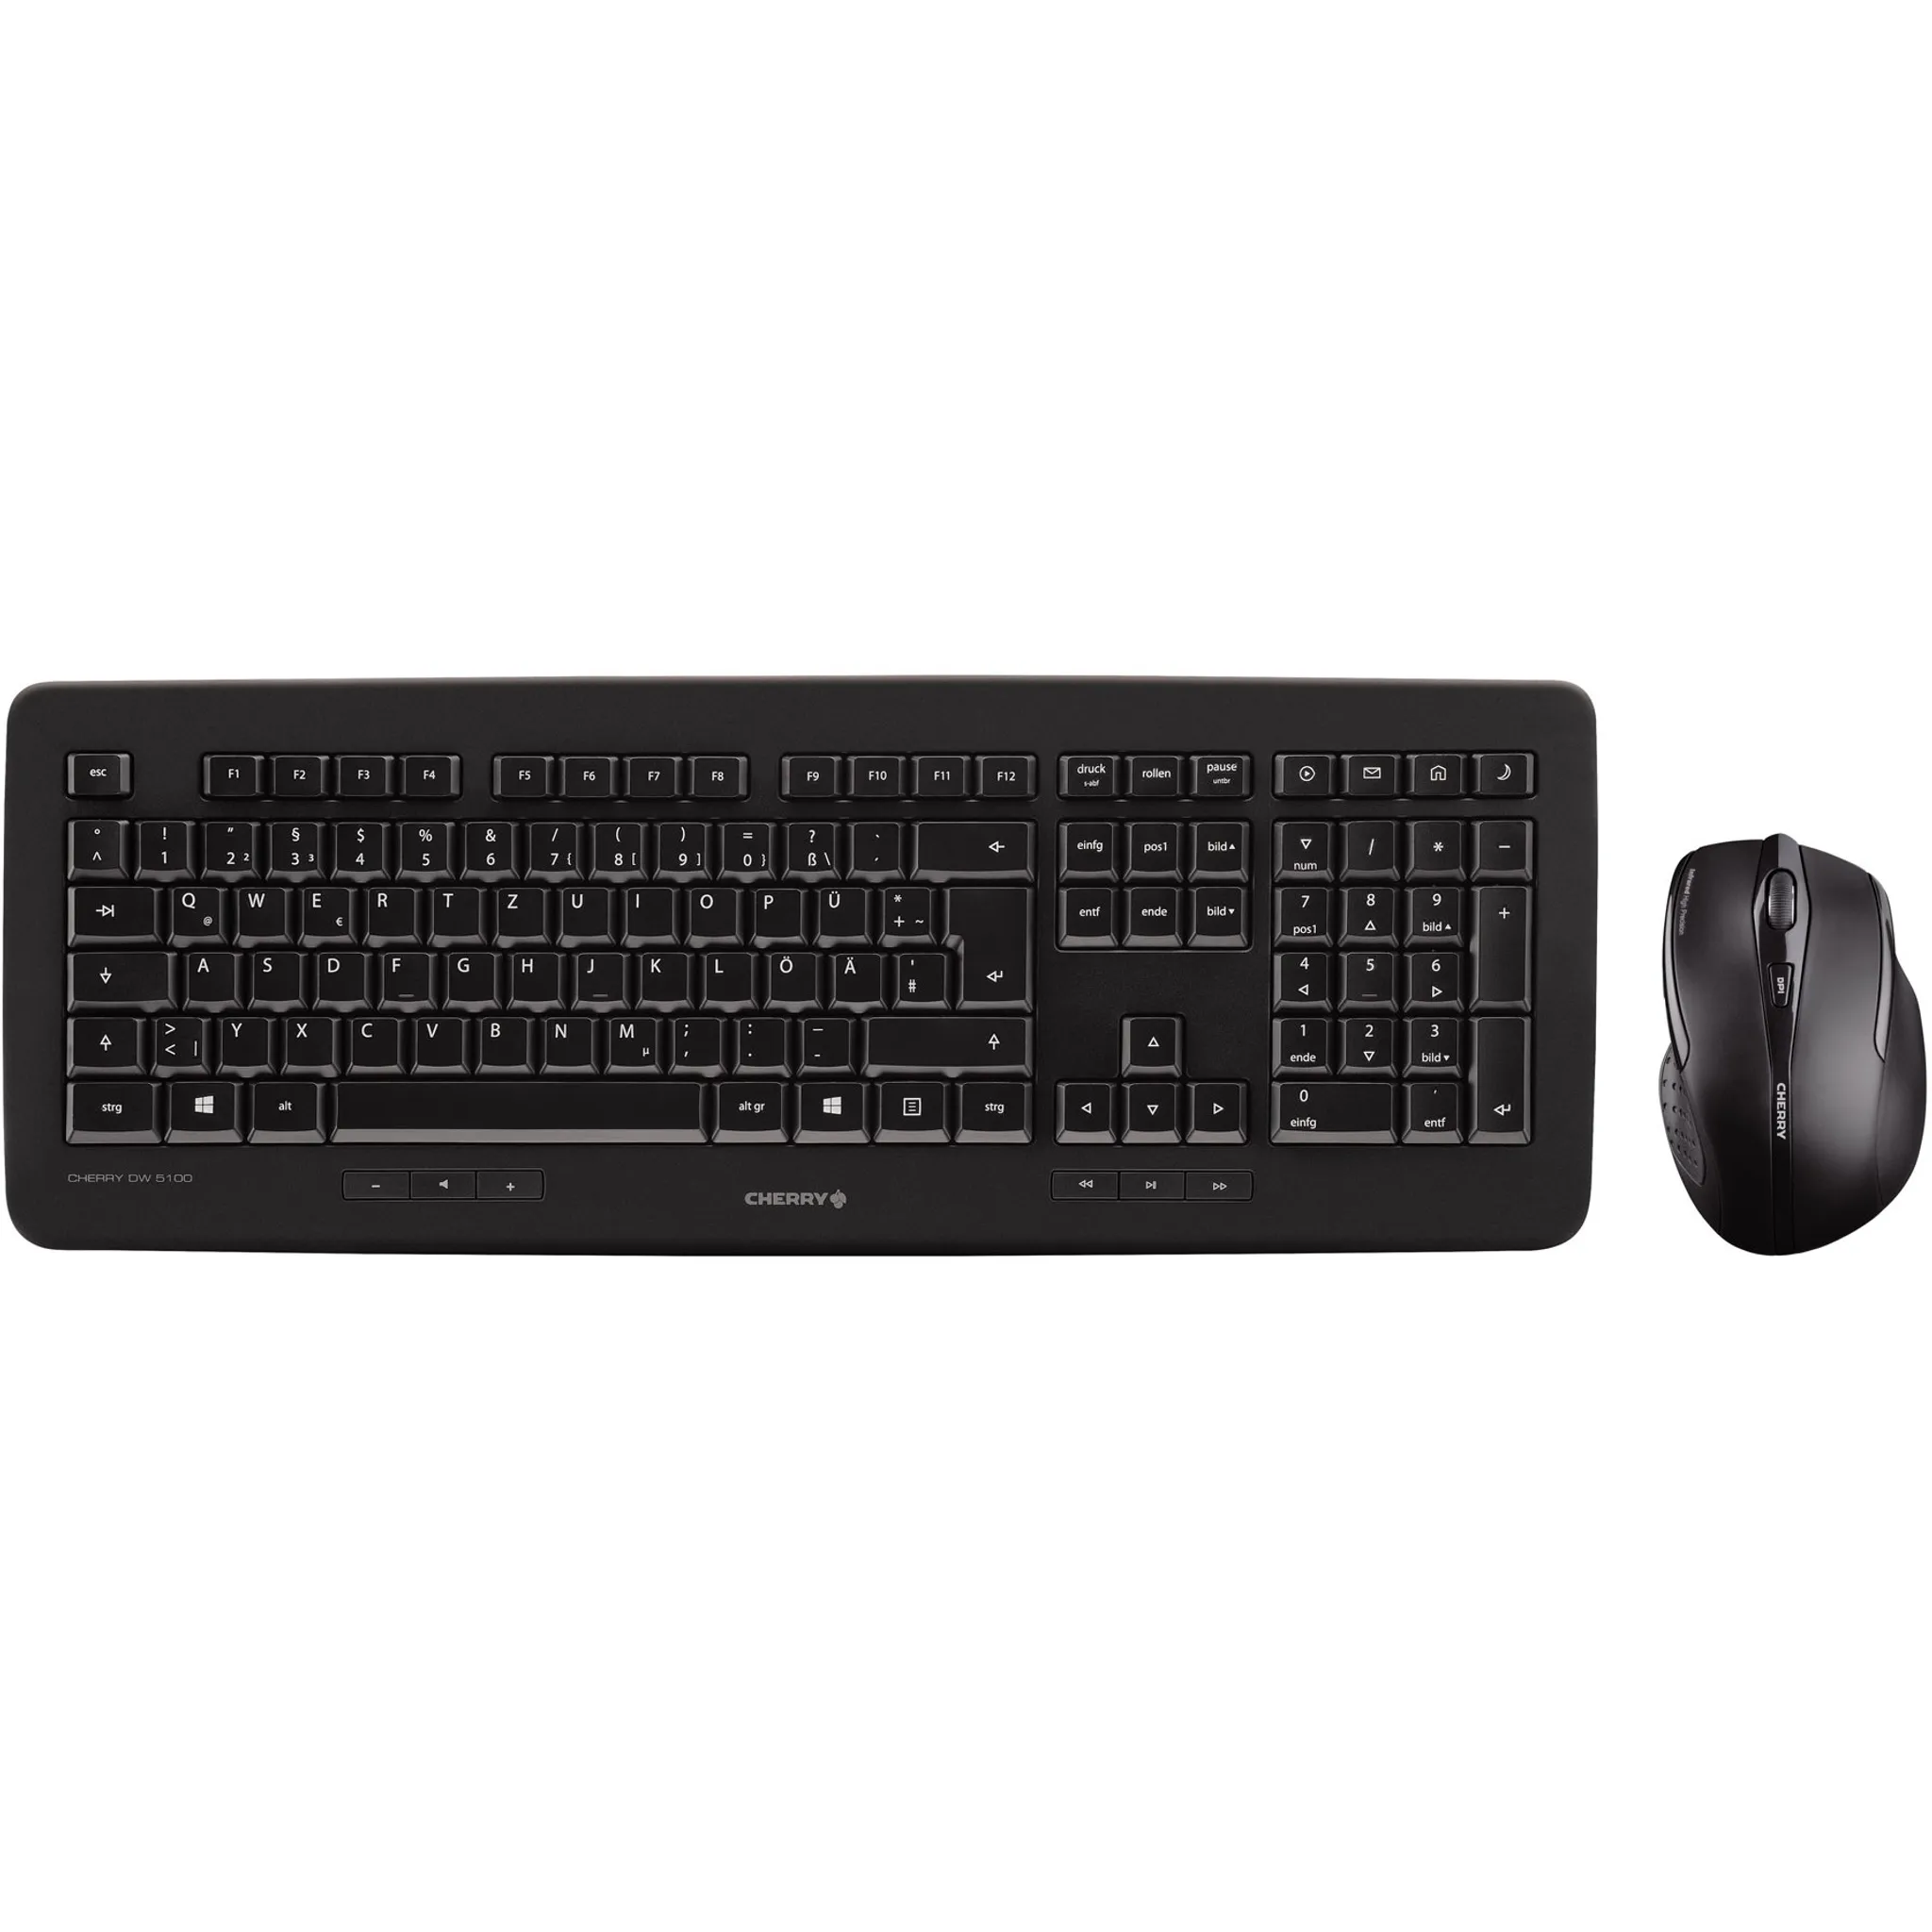 DW 5100 schwarz Maus-Tastatur-Set Tastatur